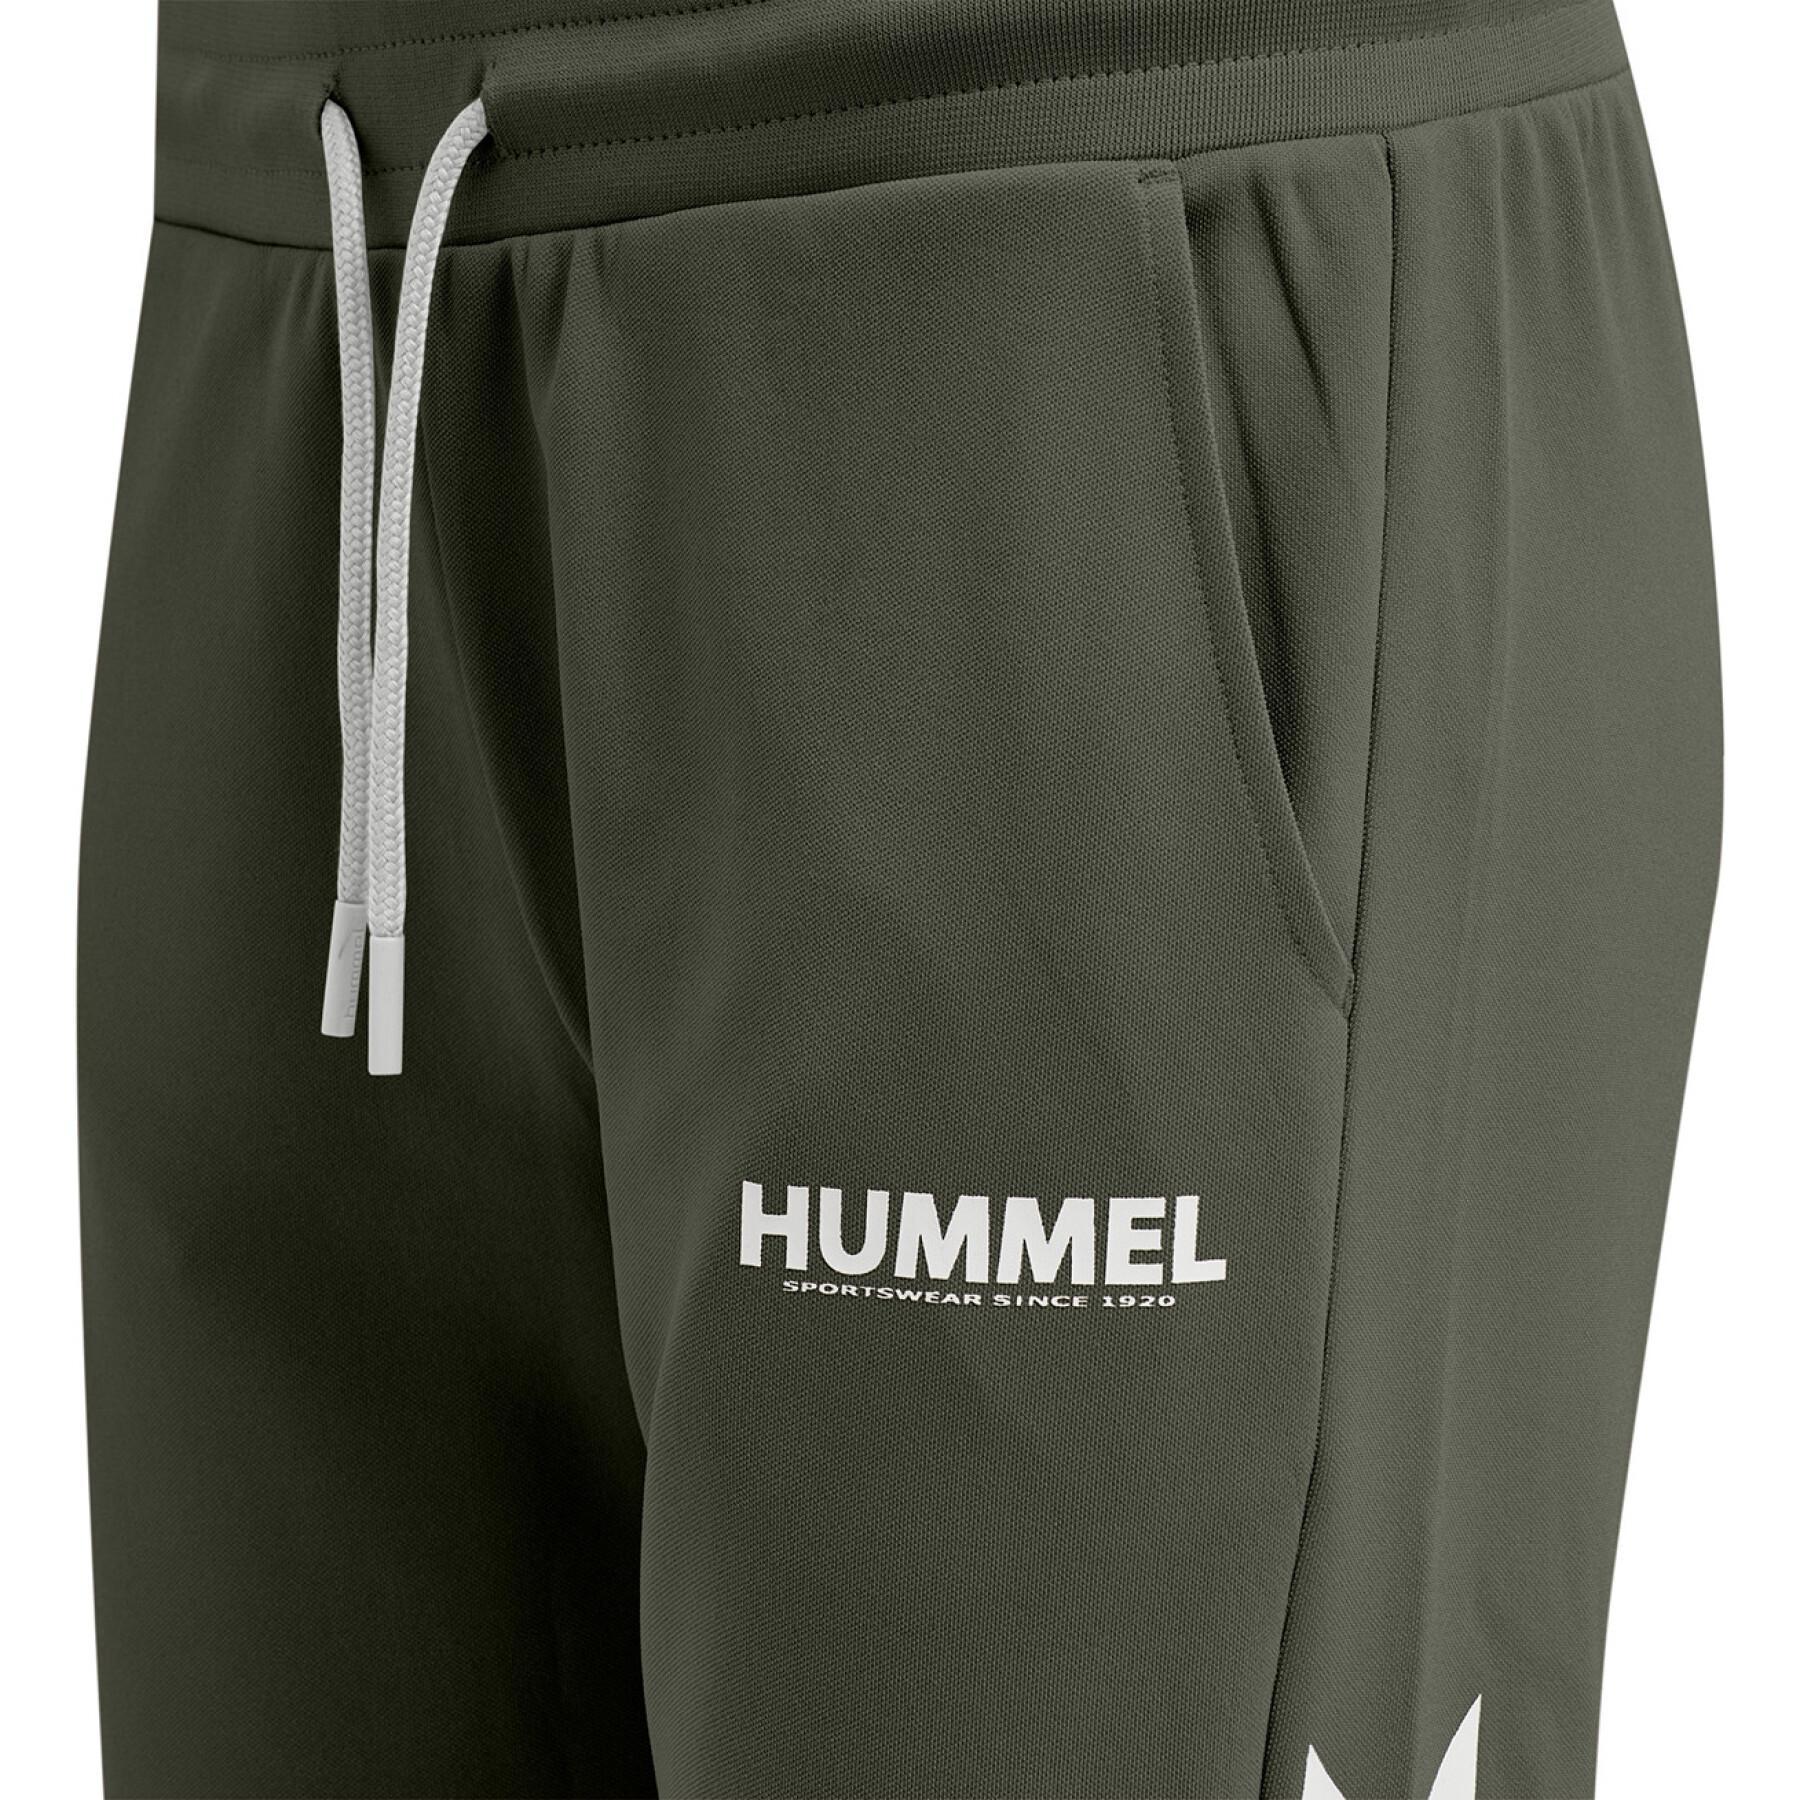 Women's trousers Hummel hmllegacy